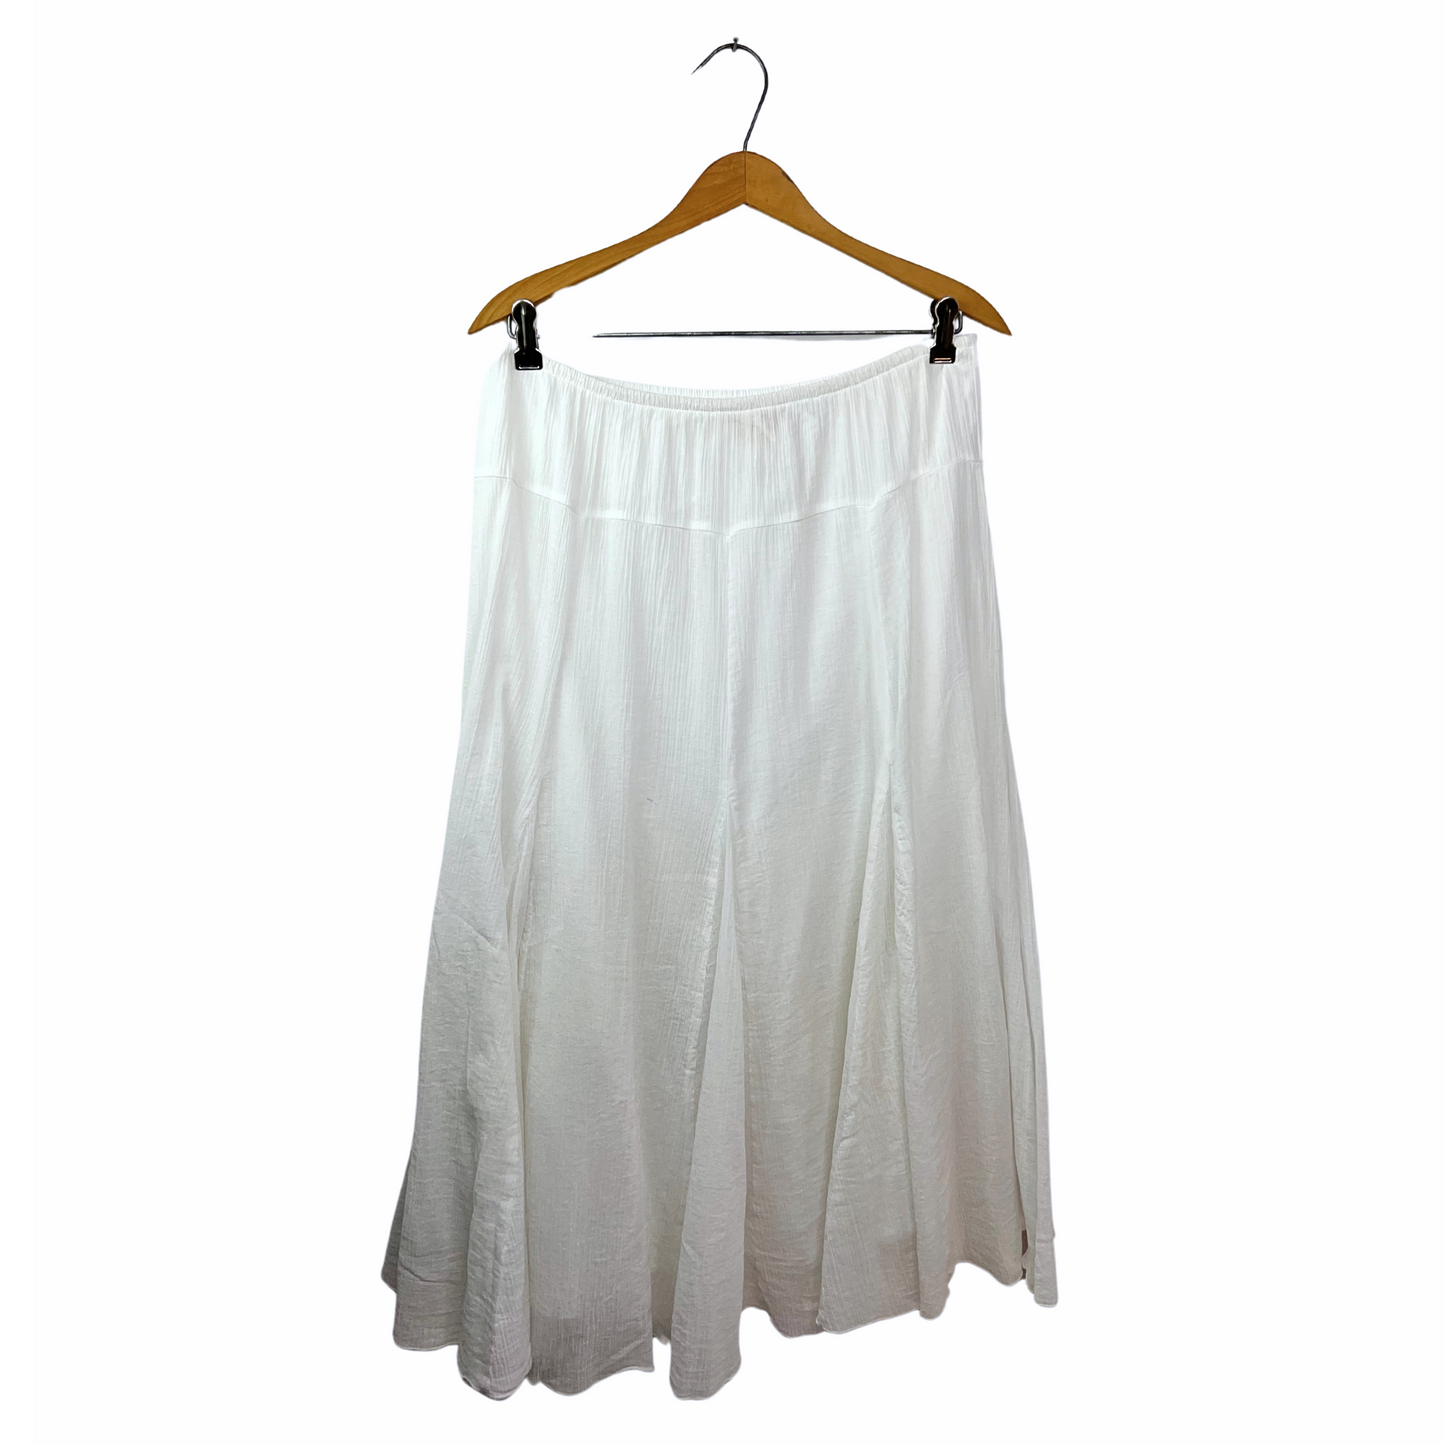 00’s White Gauzy Prairie Skirt Size Large